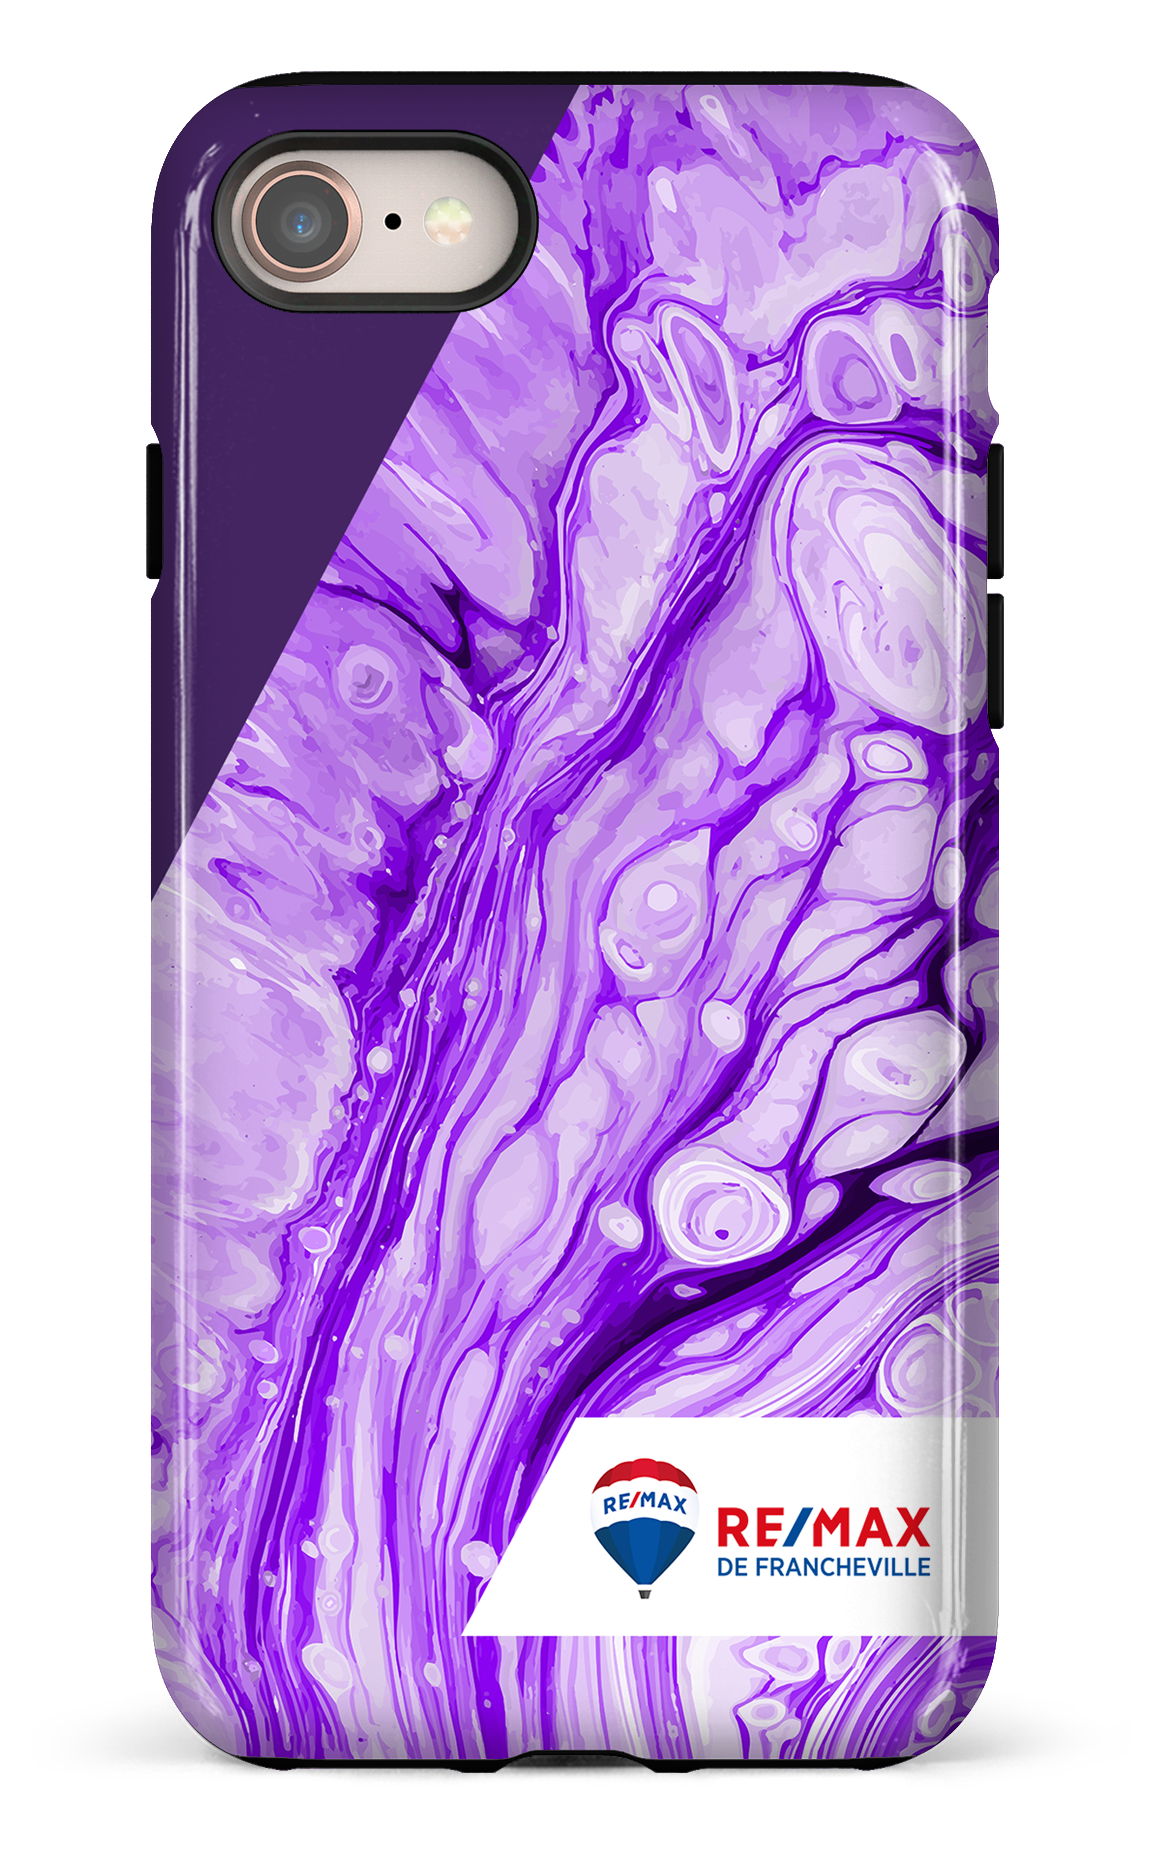 Peinture marbrée claire violette de Francheville - iPhone 7